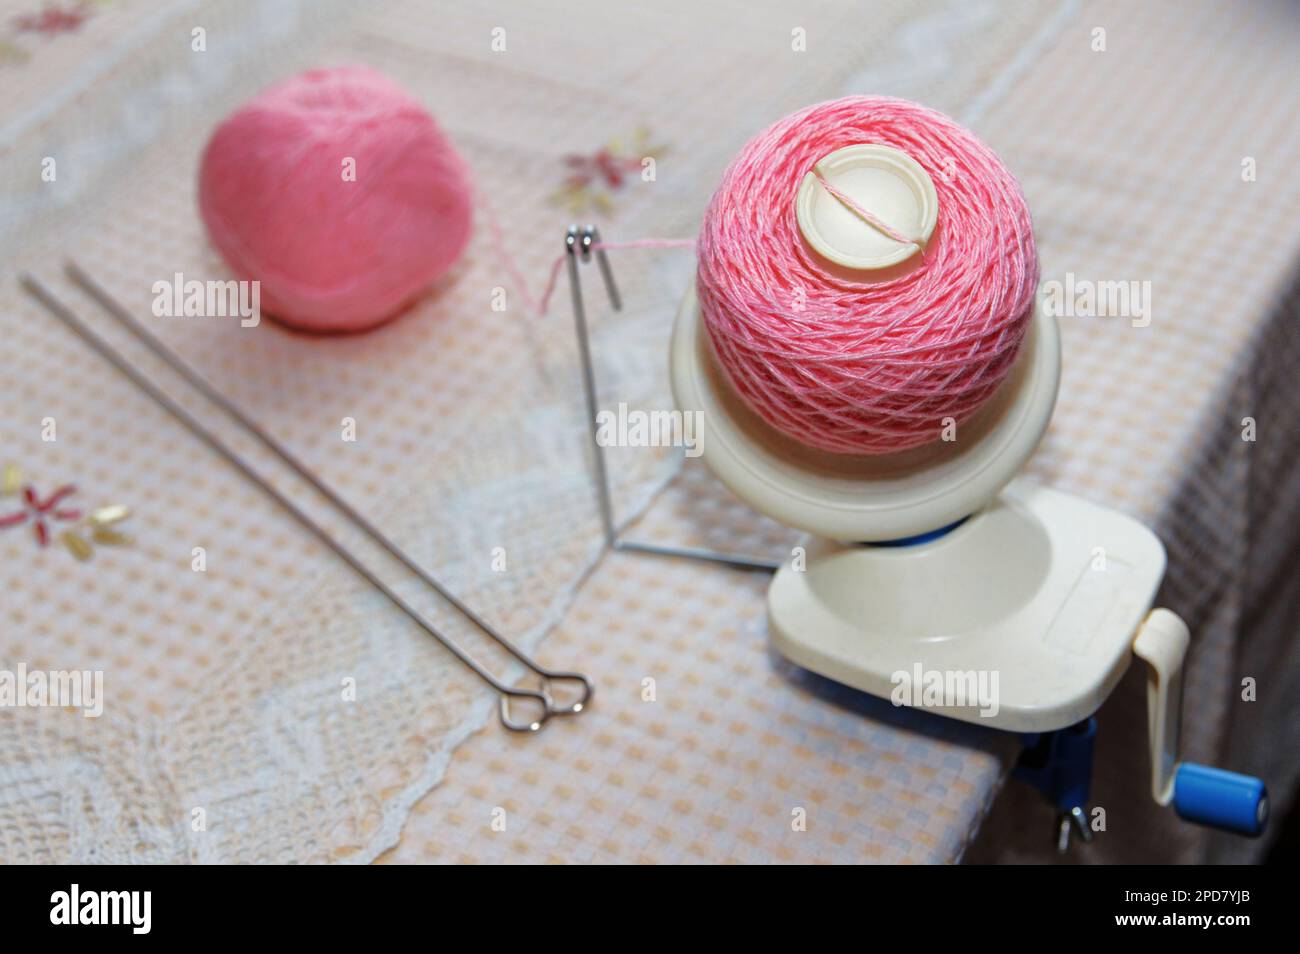 Processus d'enroulement du fil de laine rose de l'enchevêtrement à l'enroulement, à l'aide d'un corbillard sur la table Banque D'Images